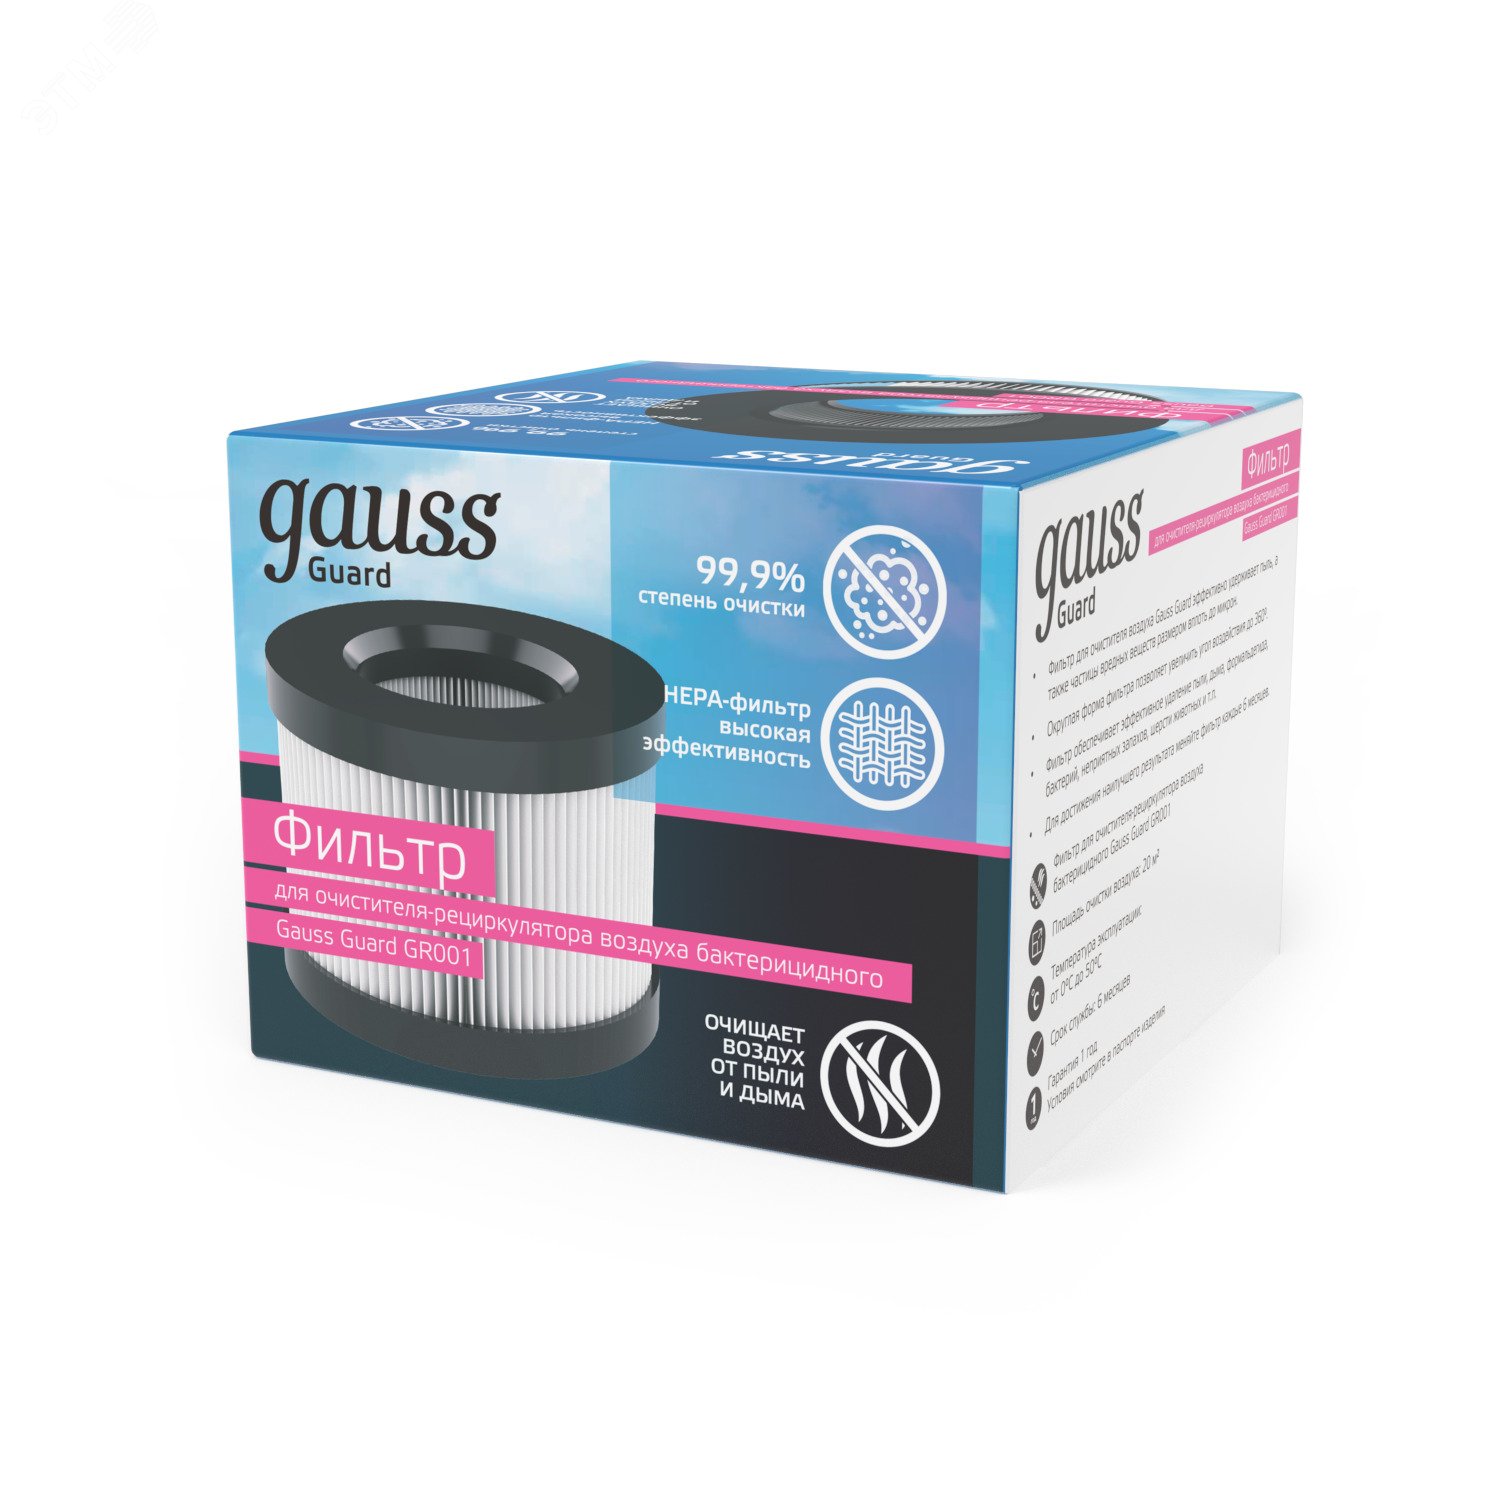 Фильтр для очистителя (рециркулятора) воздуха с ультрафиолетовым излучением антибактериального GR001 Guard Gauss GR002 GAUSS - превью 6